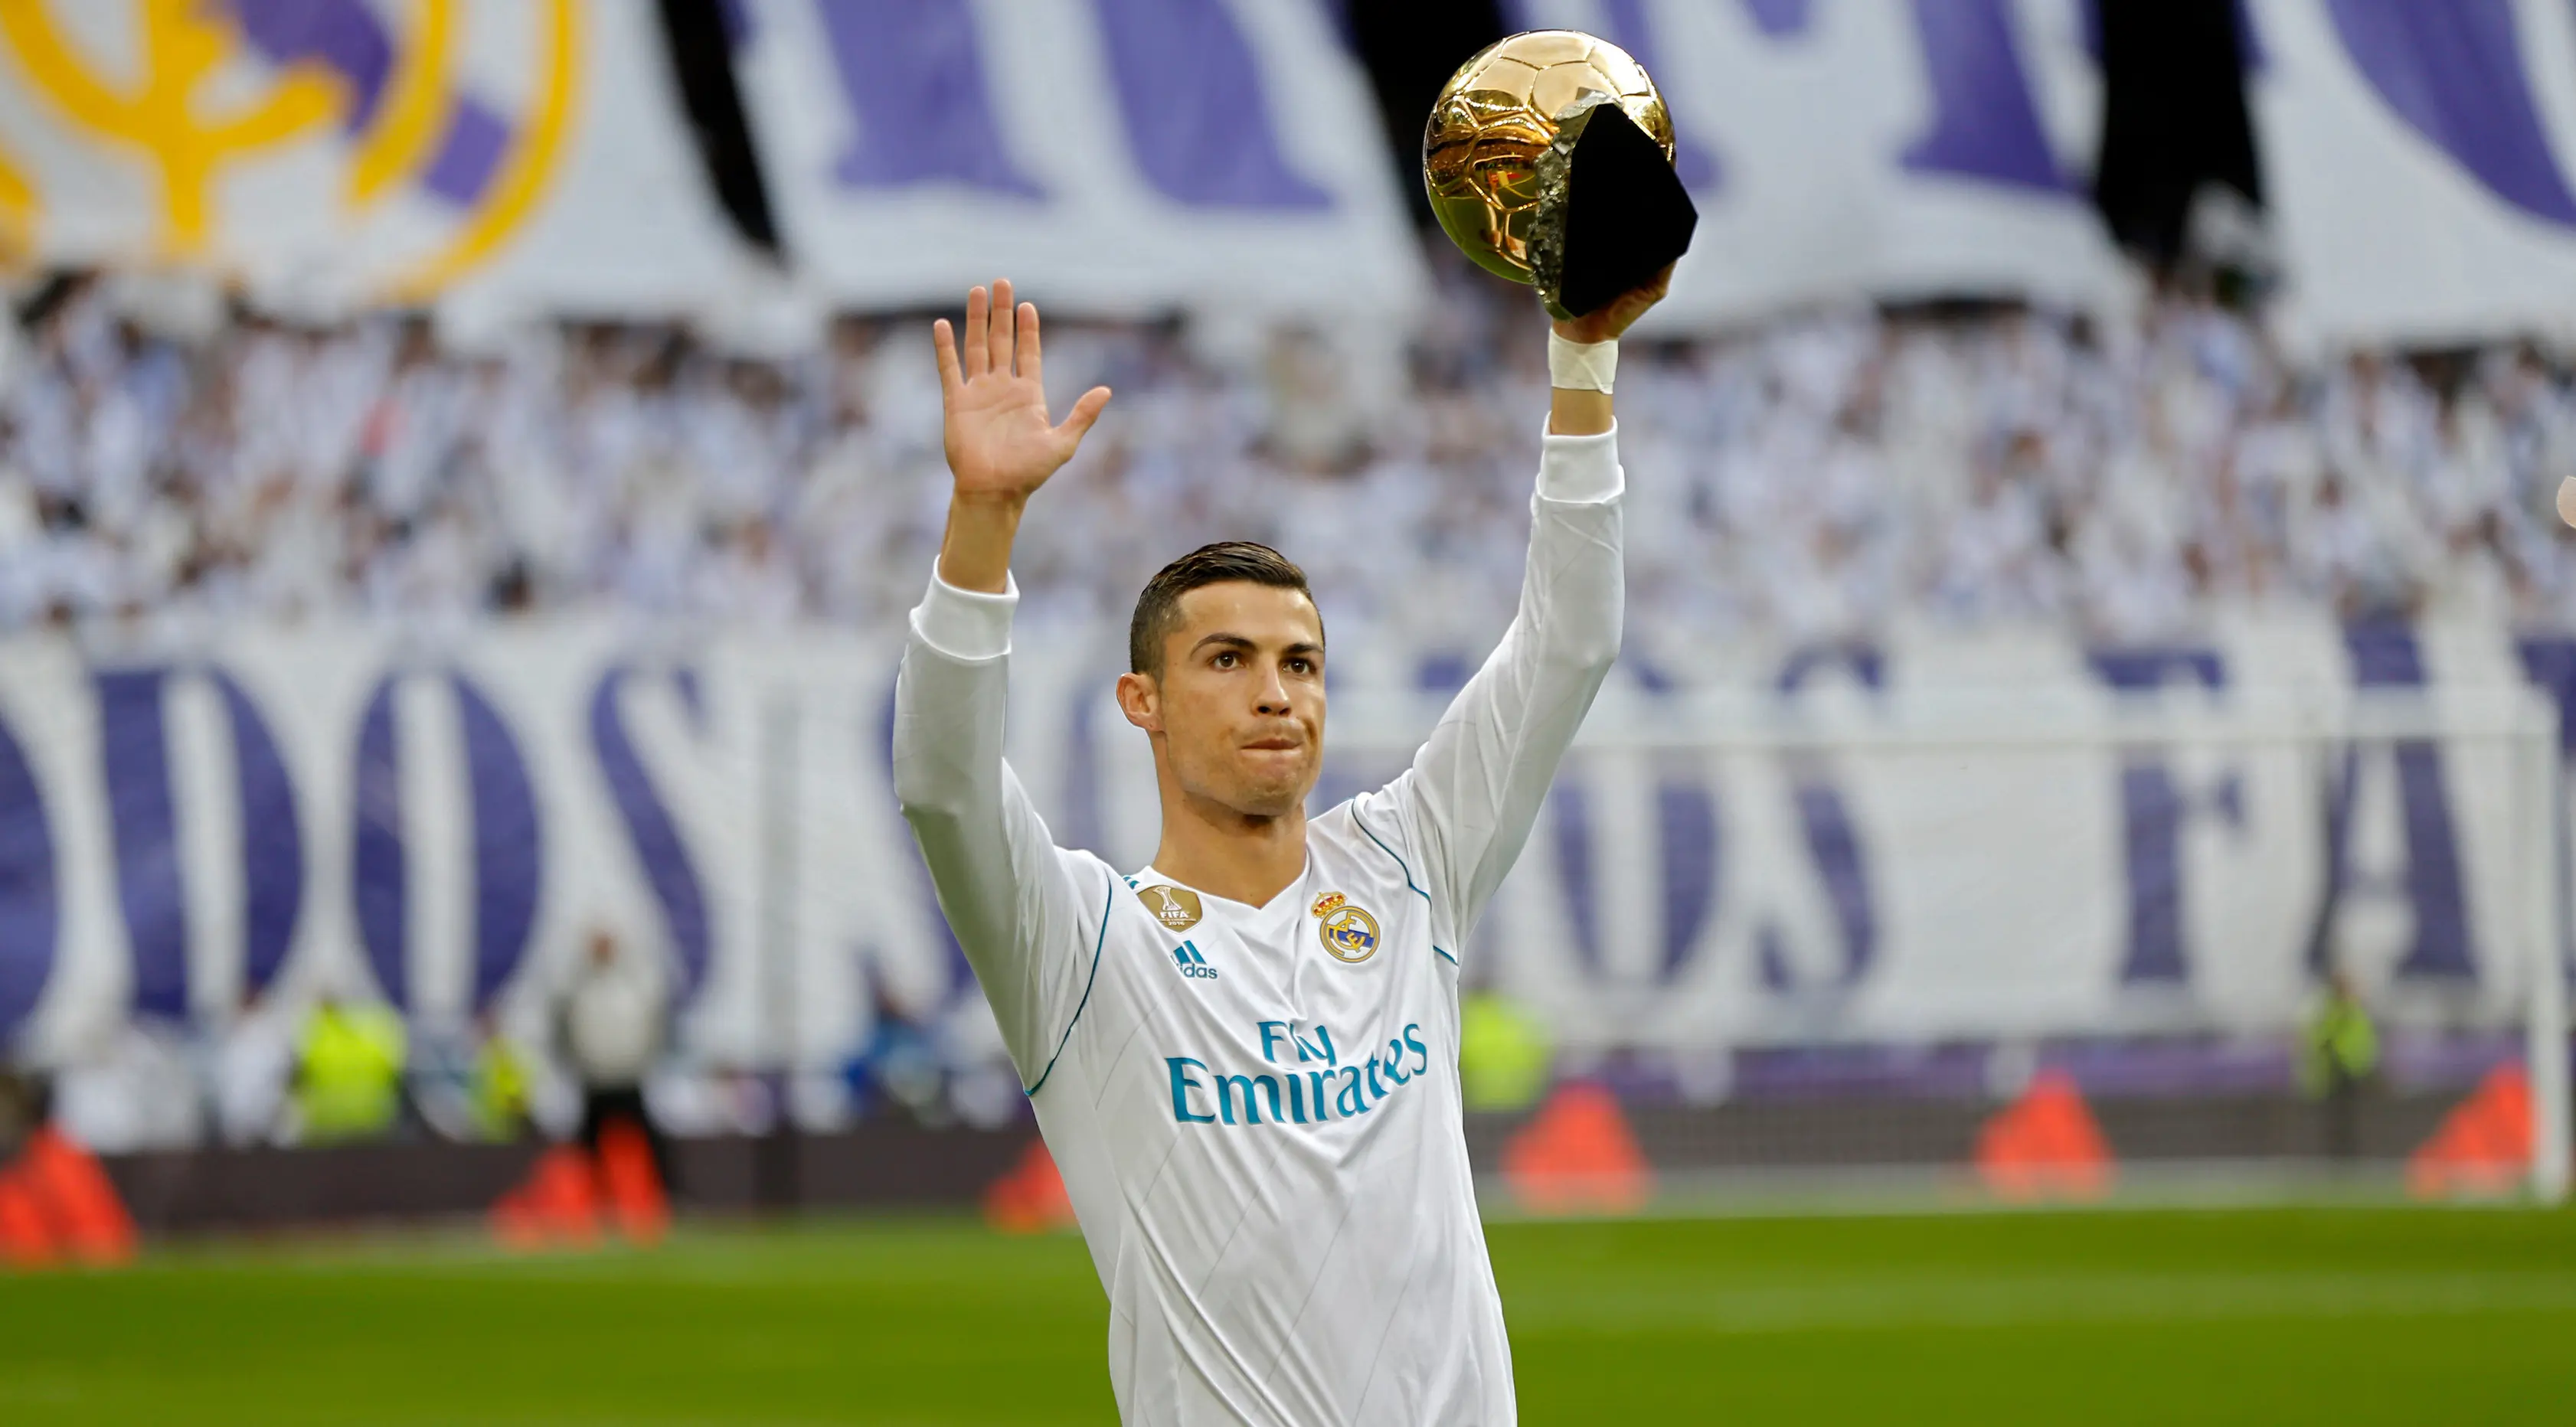 Pemain Real Madrid, Cristiano Ronaldo memamerkan salah satu trofi bola emas Ballon d'Or sebelum laga Real Madrid vs Sevilla di Stadion Santiago Bernabeu, Sabtu (9/12). Ronaldo baru saja meraih trofi kelima penghargaan Ballon d'Or 2017. (AP/Francisco Seco)